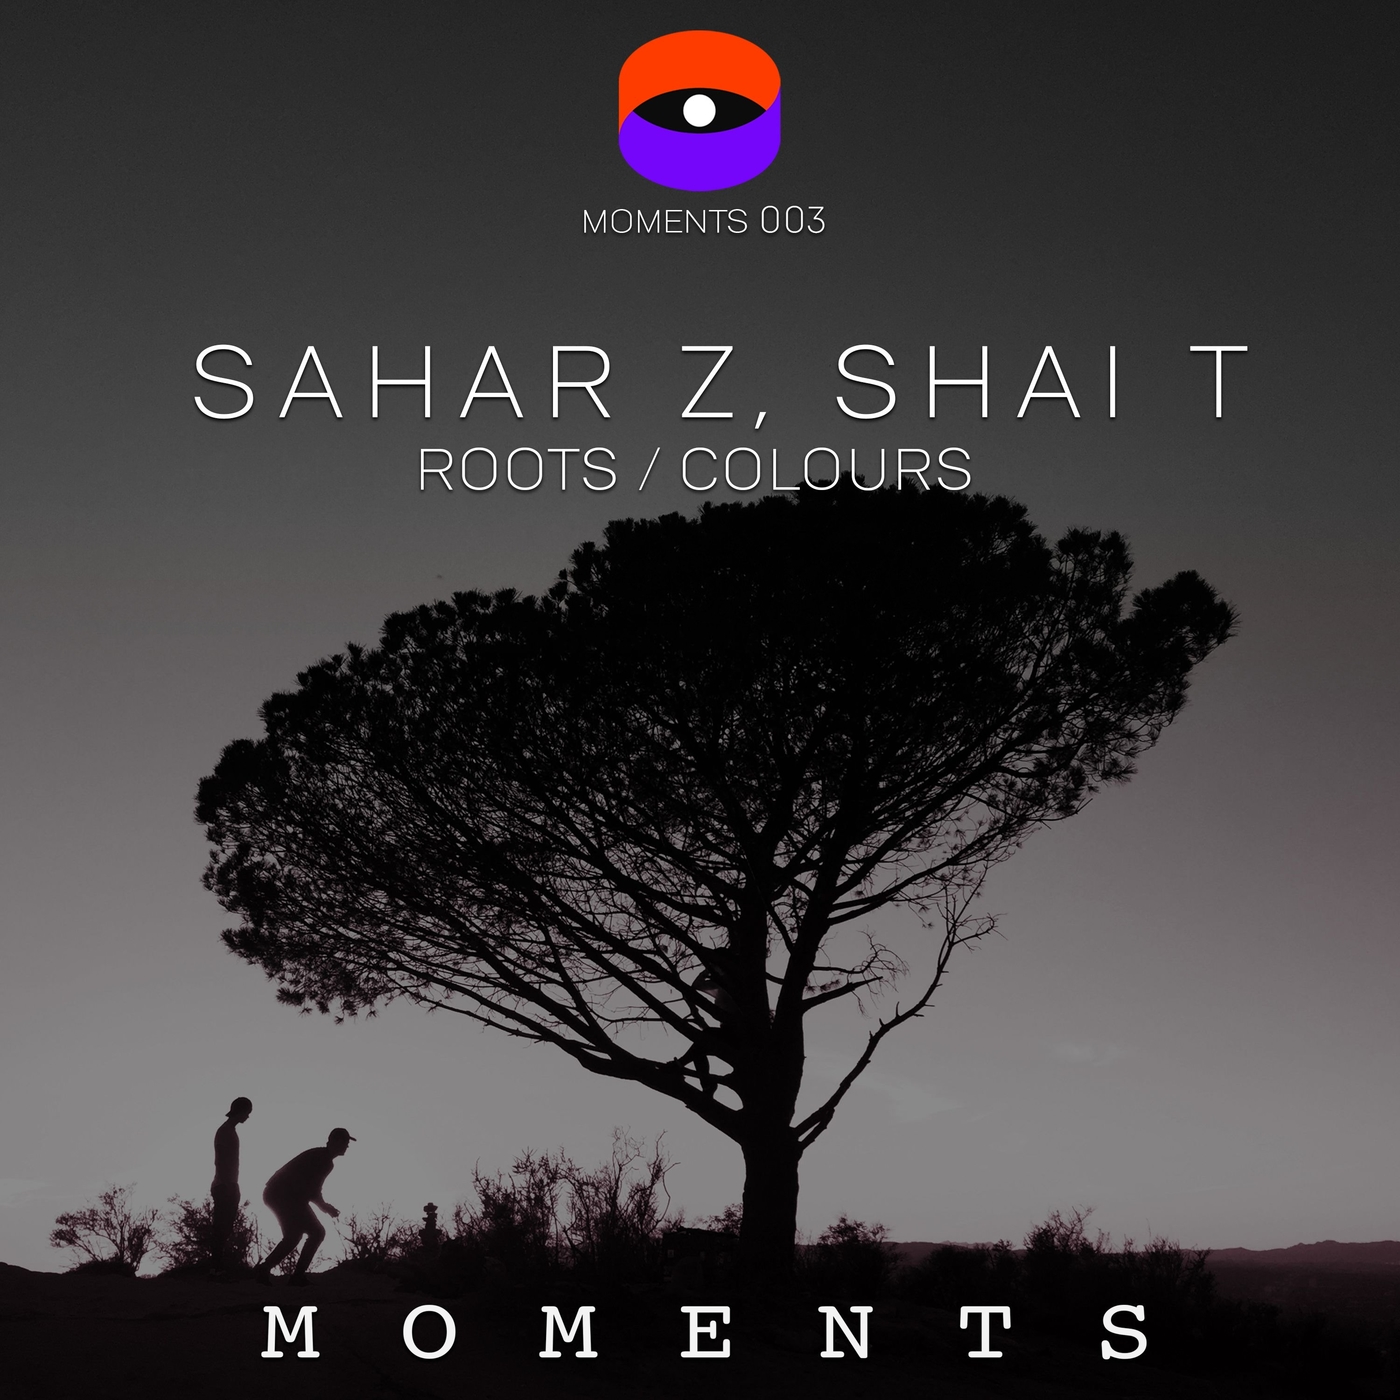 Sahar Z & Shai T - Roots - Colours [MOMENTS003]